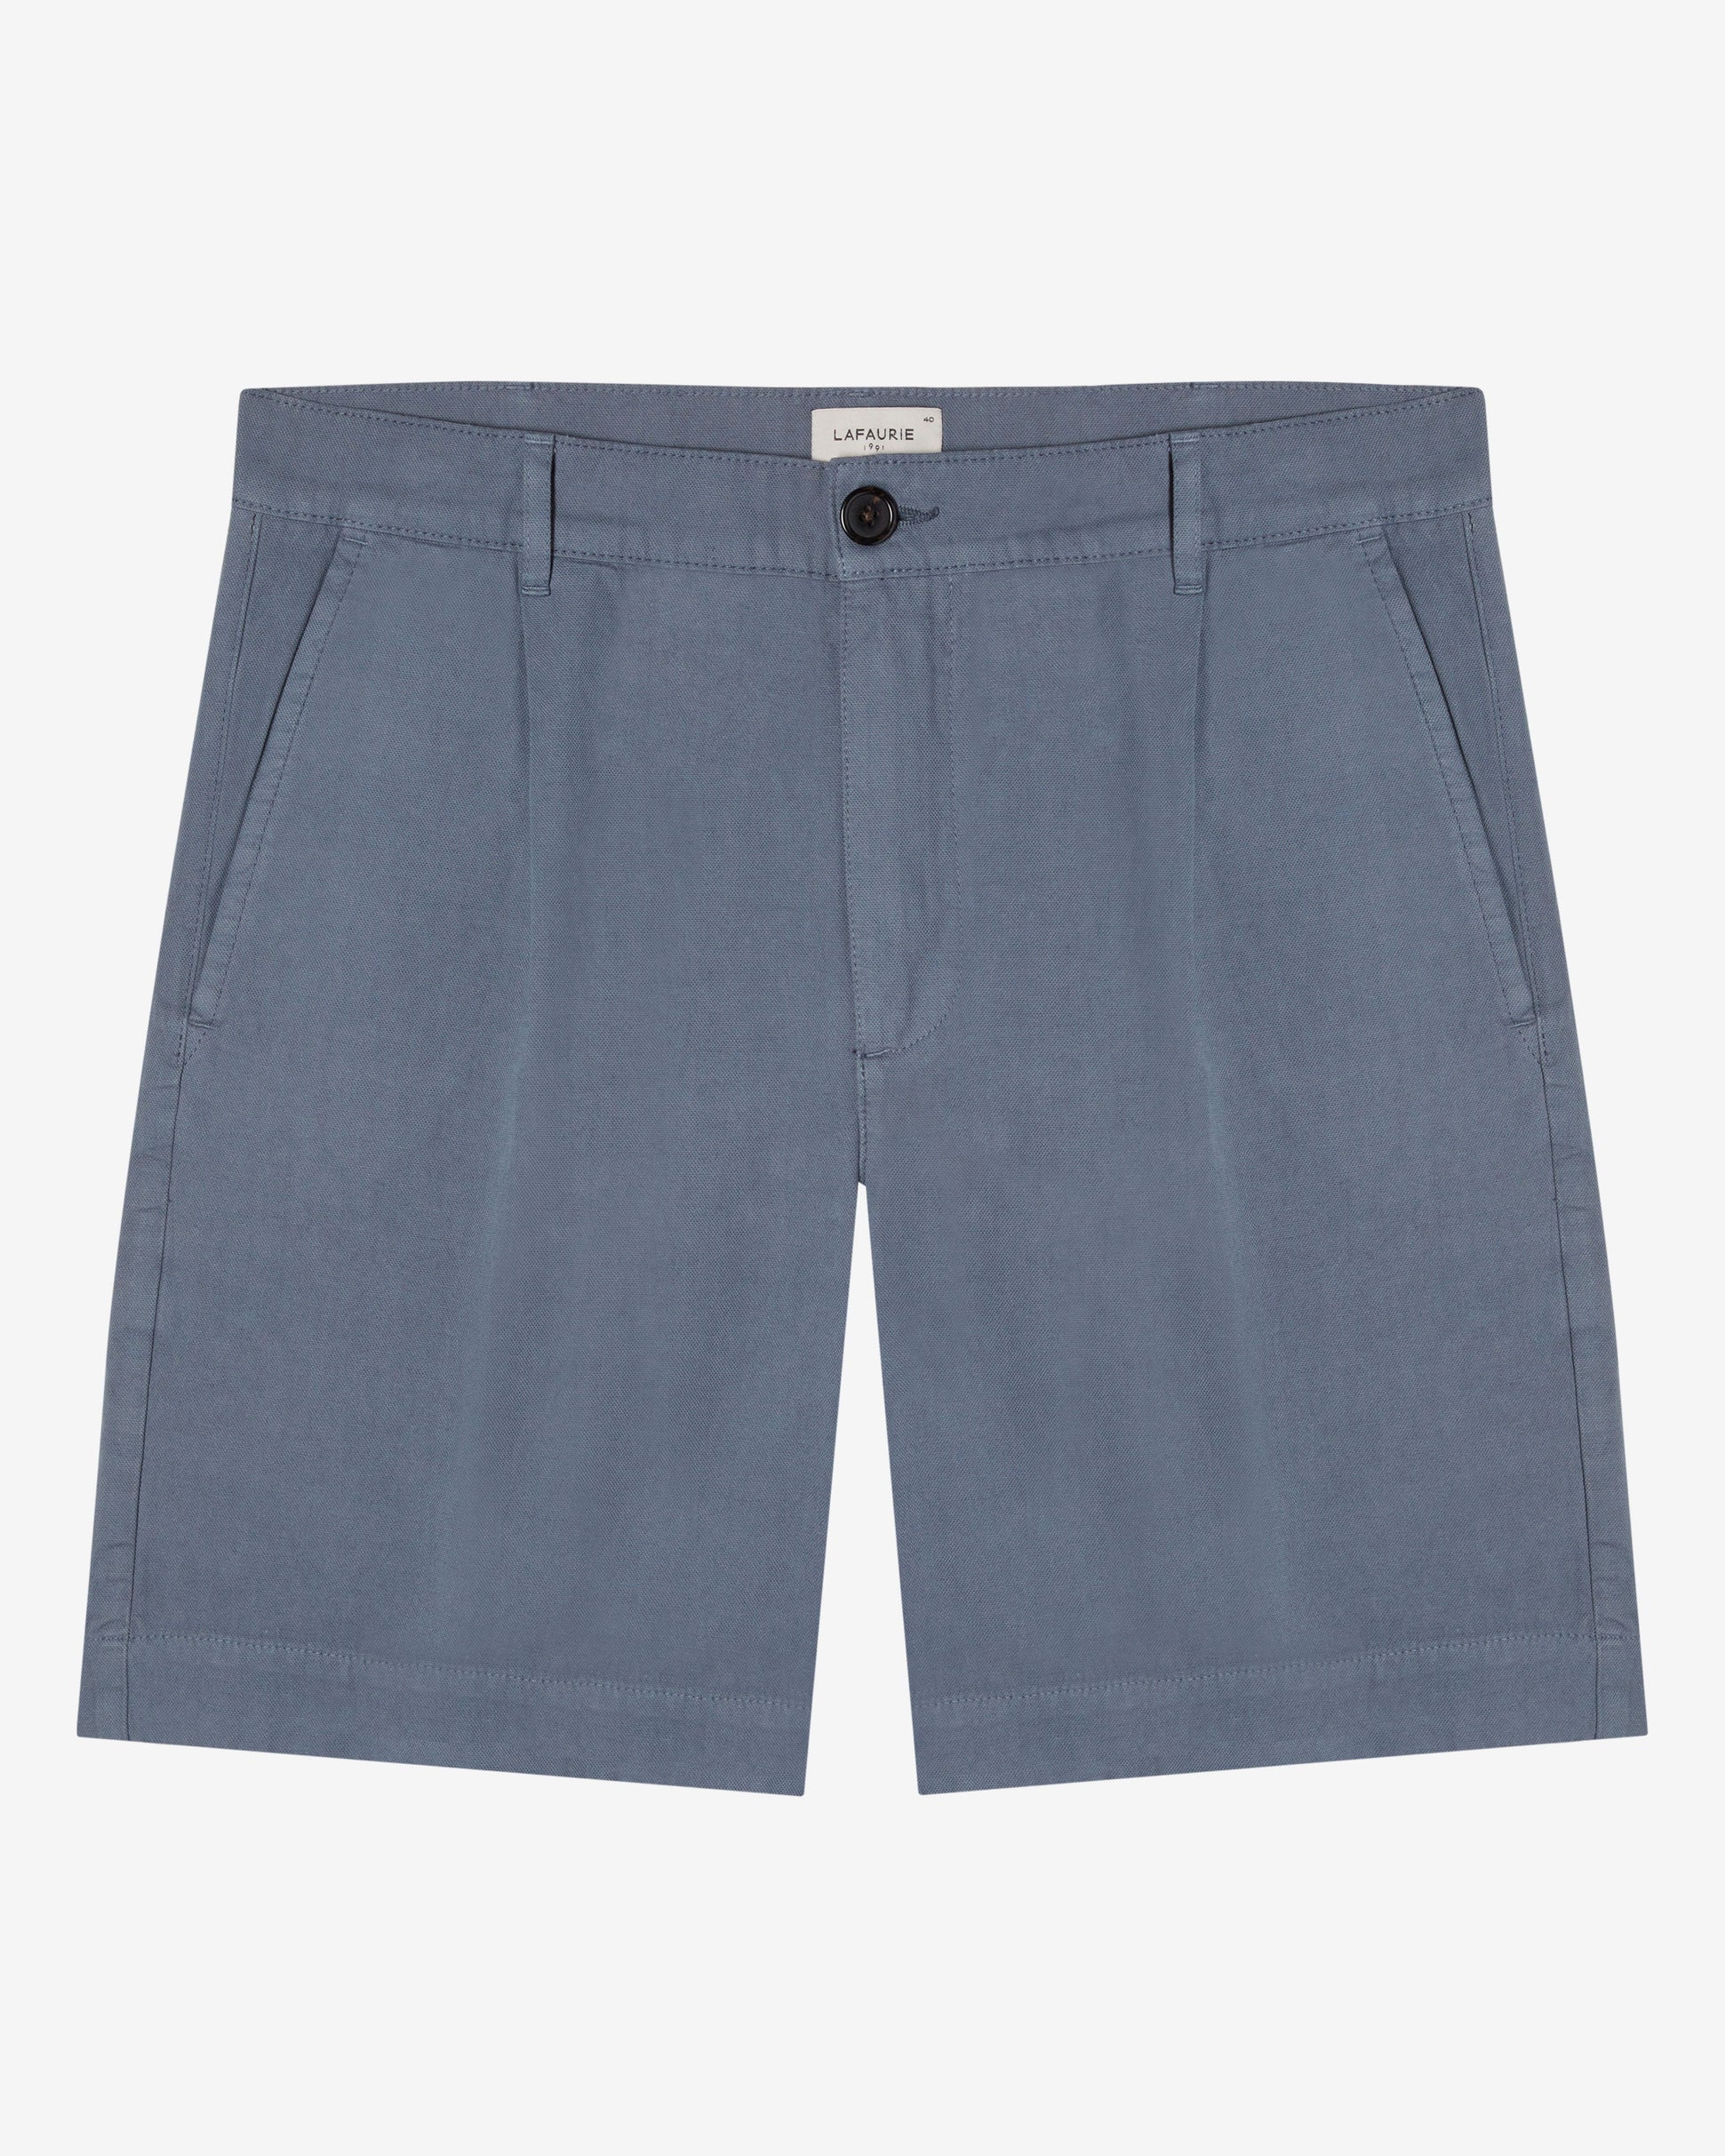 DENVER Shorts - Slate